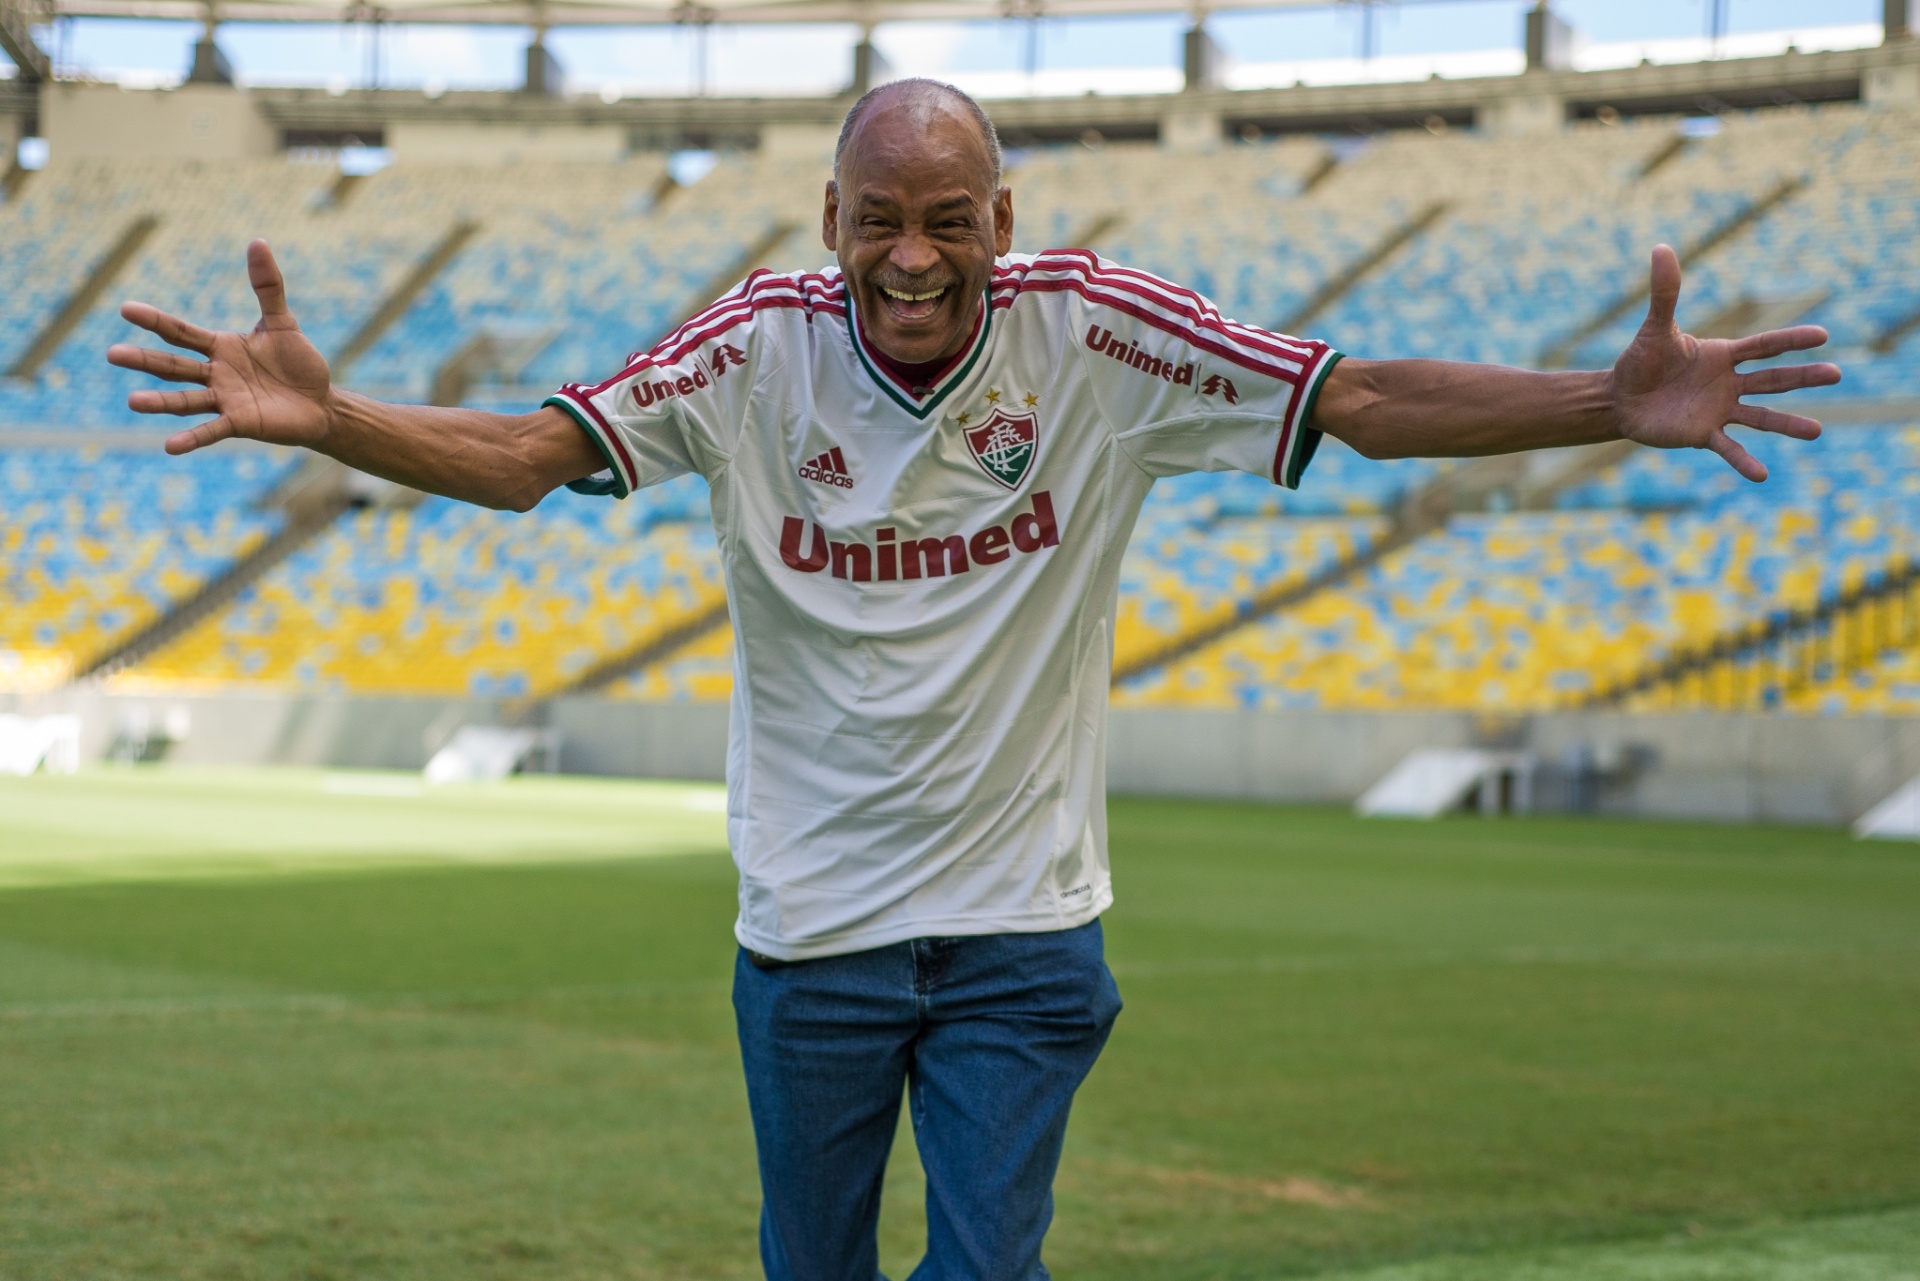 Assis, ídolo do Fluminense, morre em Curitiba aos 61 anos - 06/07/2014 -  UOL Esporte